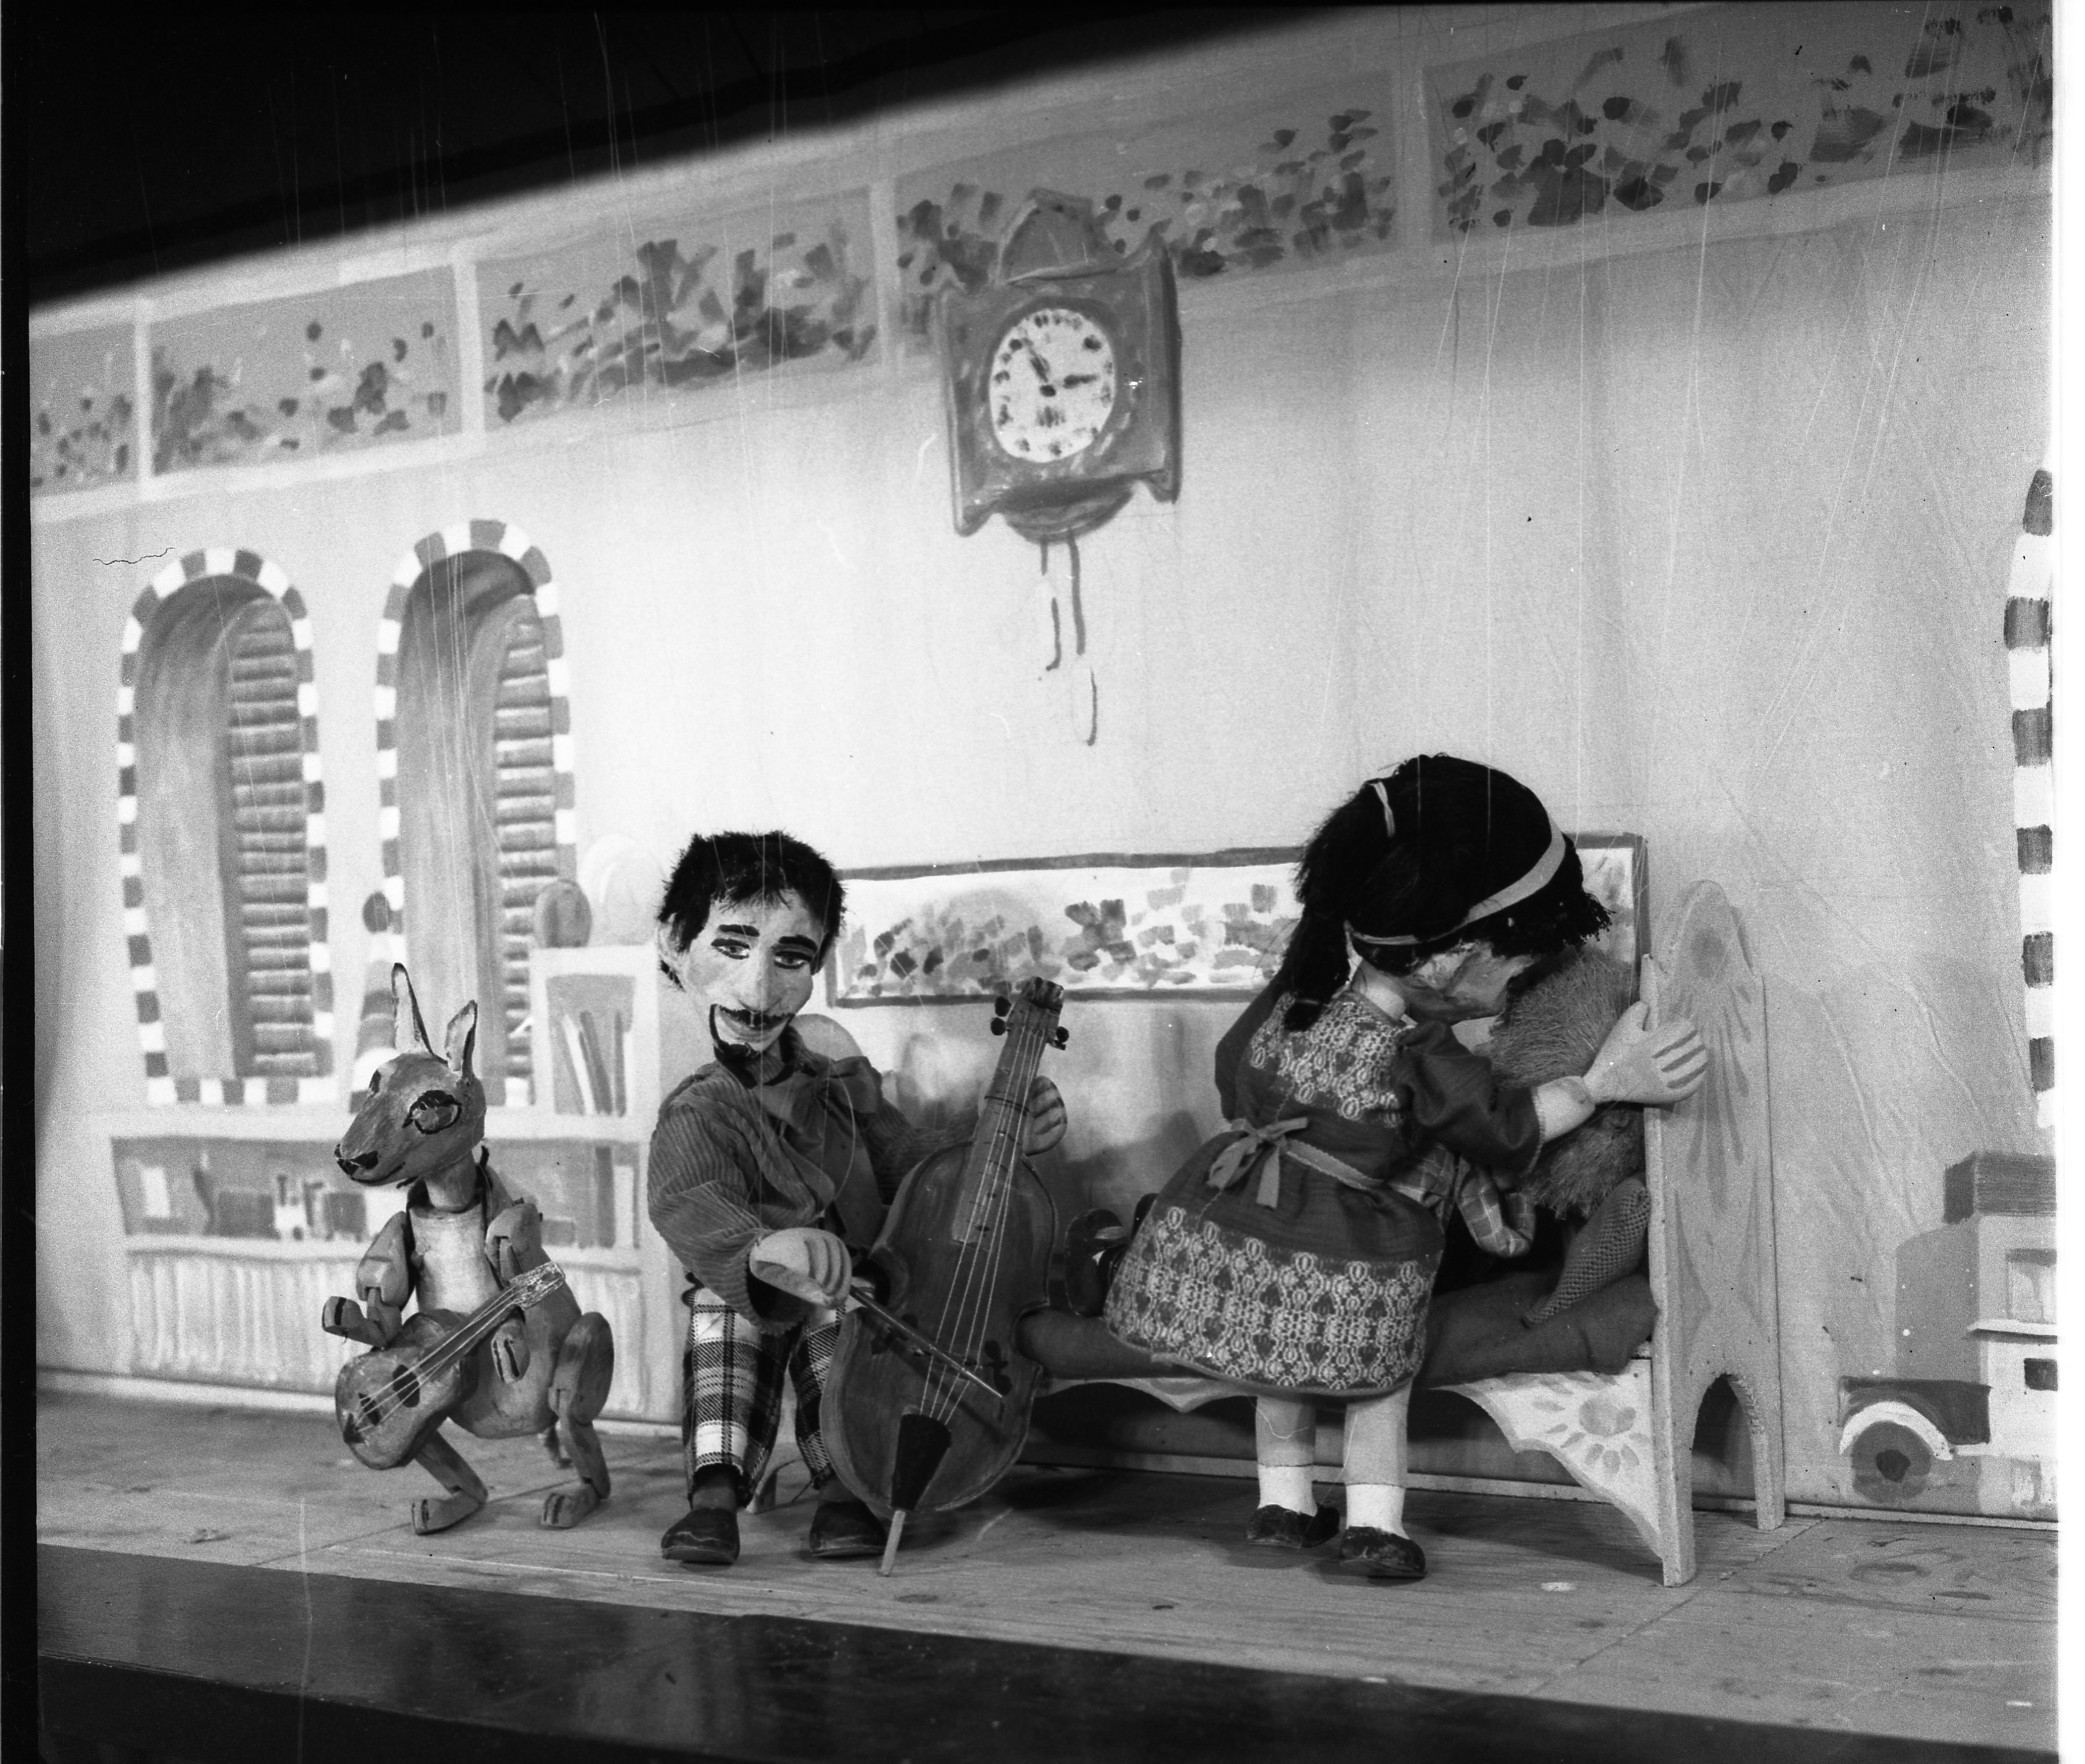  תיאטרון בובות שייצר אביגדור כהן ; 1965